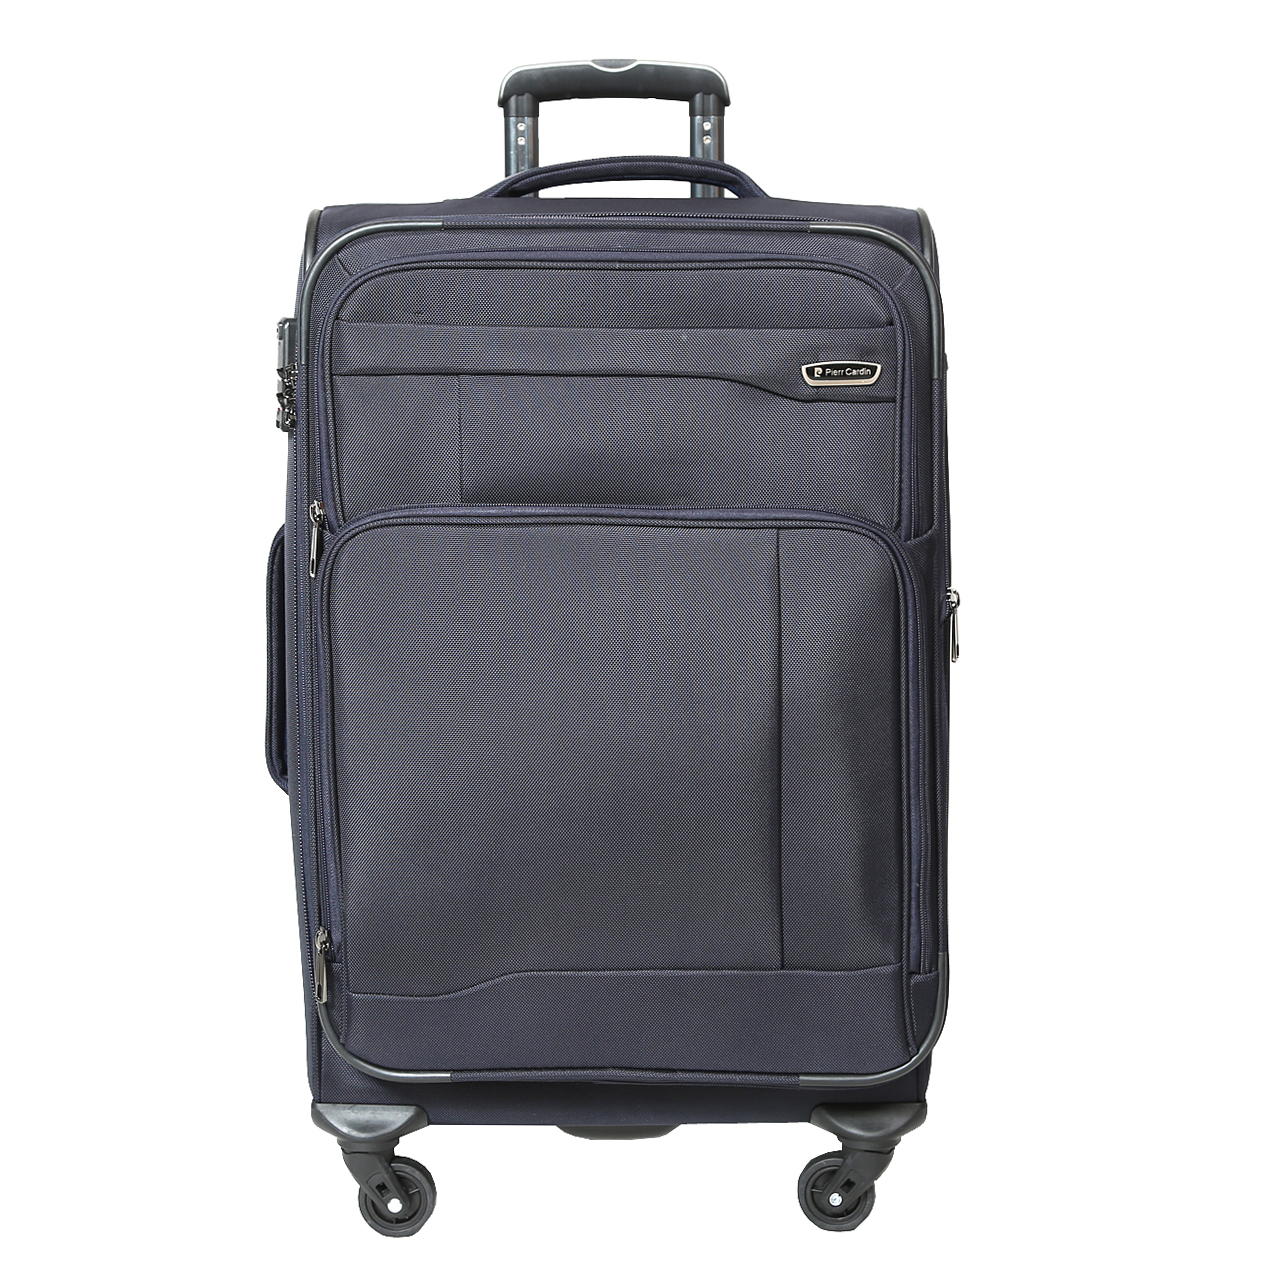  چمدان پیر کاردین مدل SBP1600 سایز متوسط  -  - 3